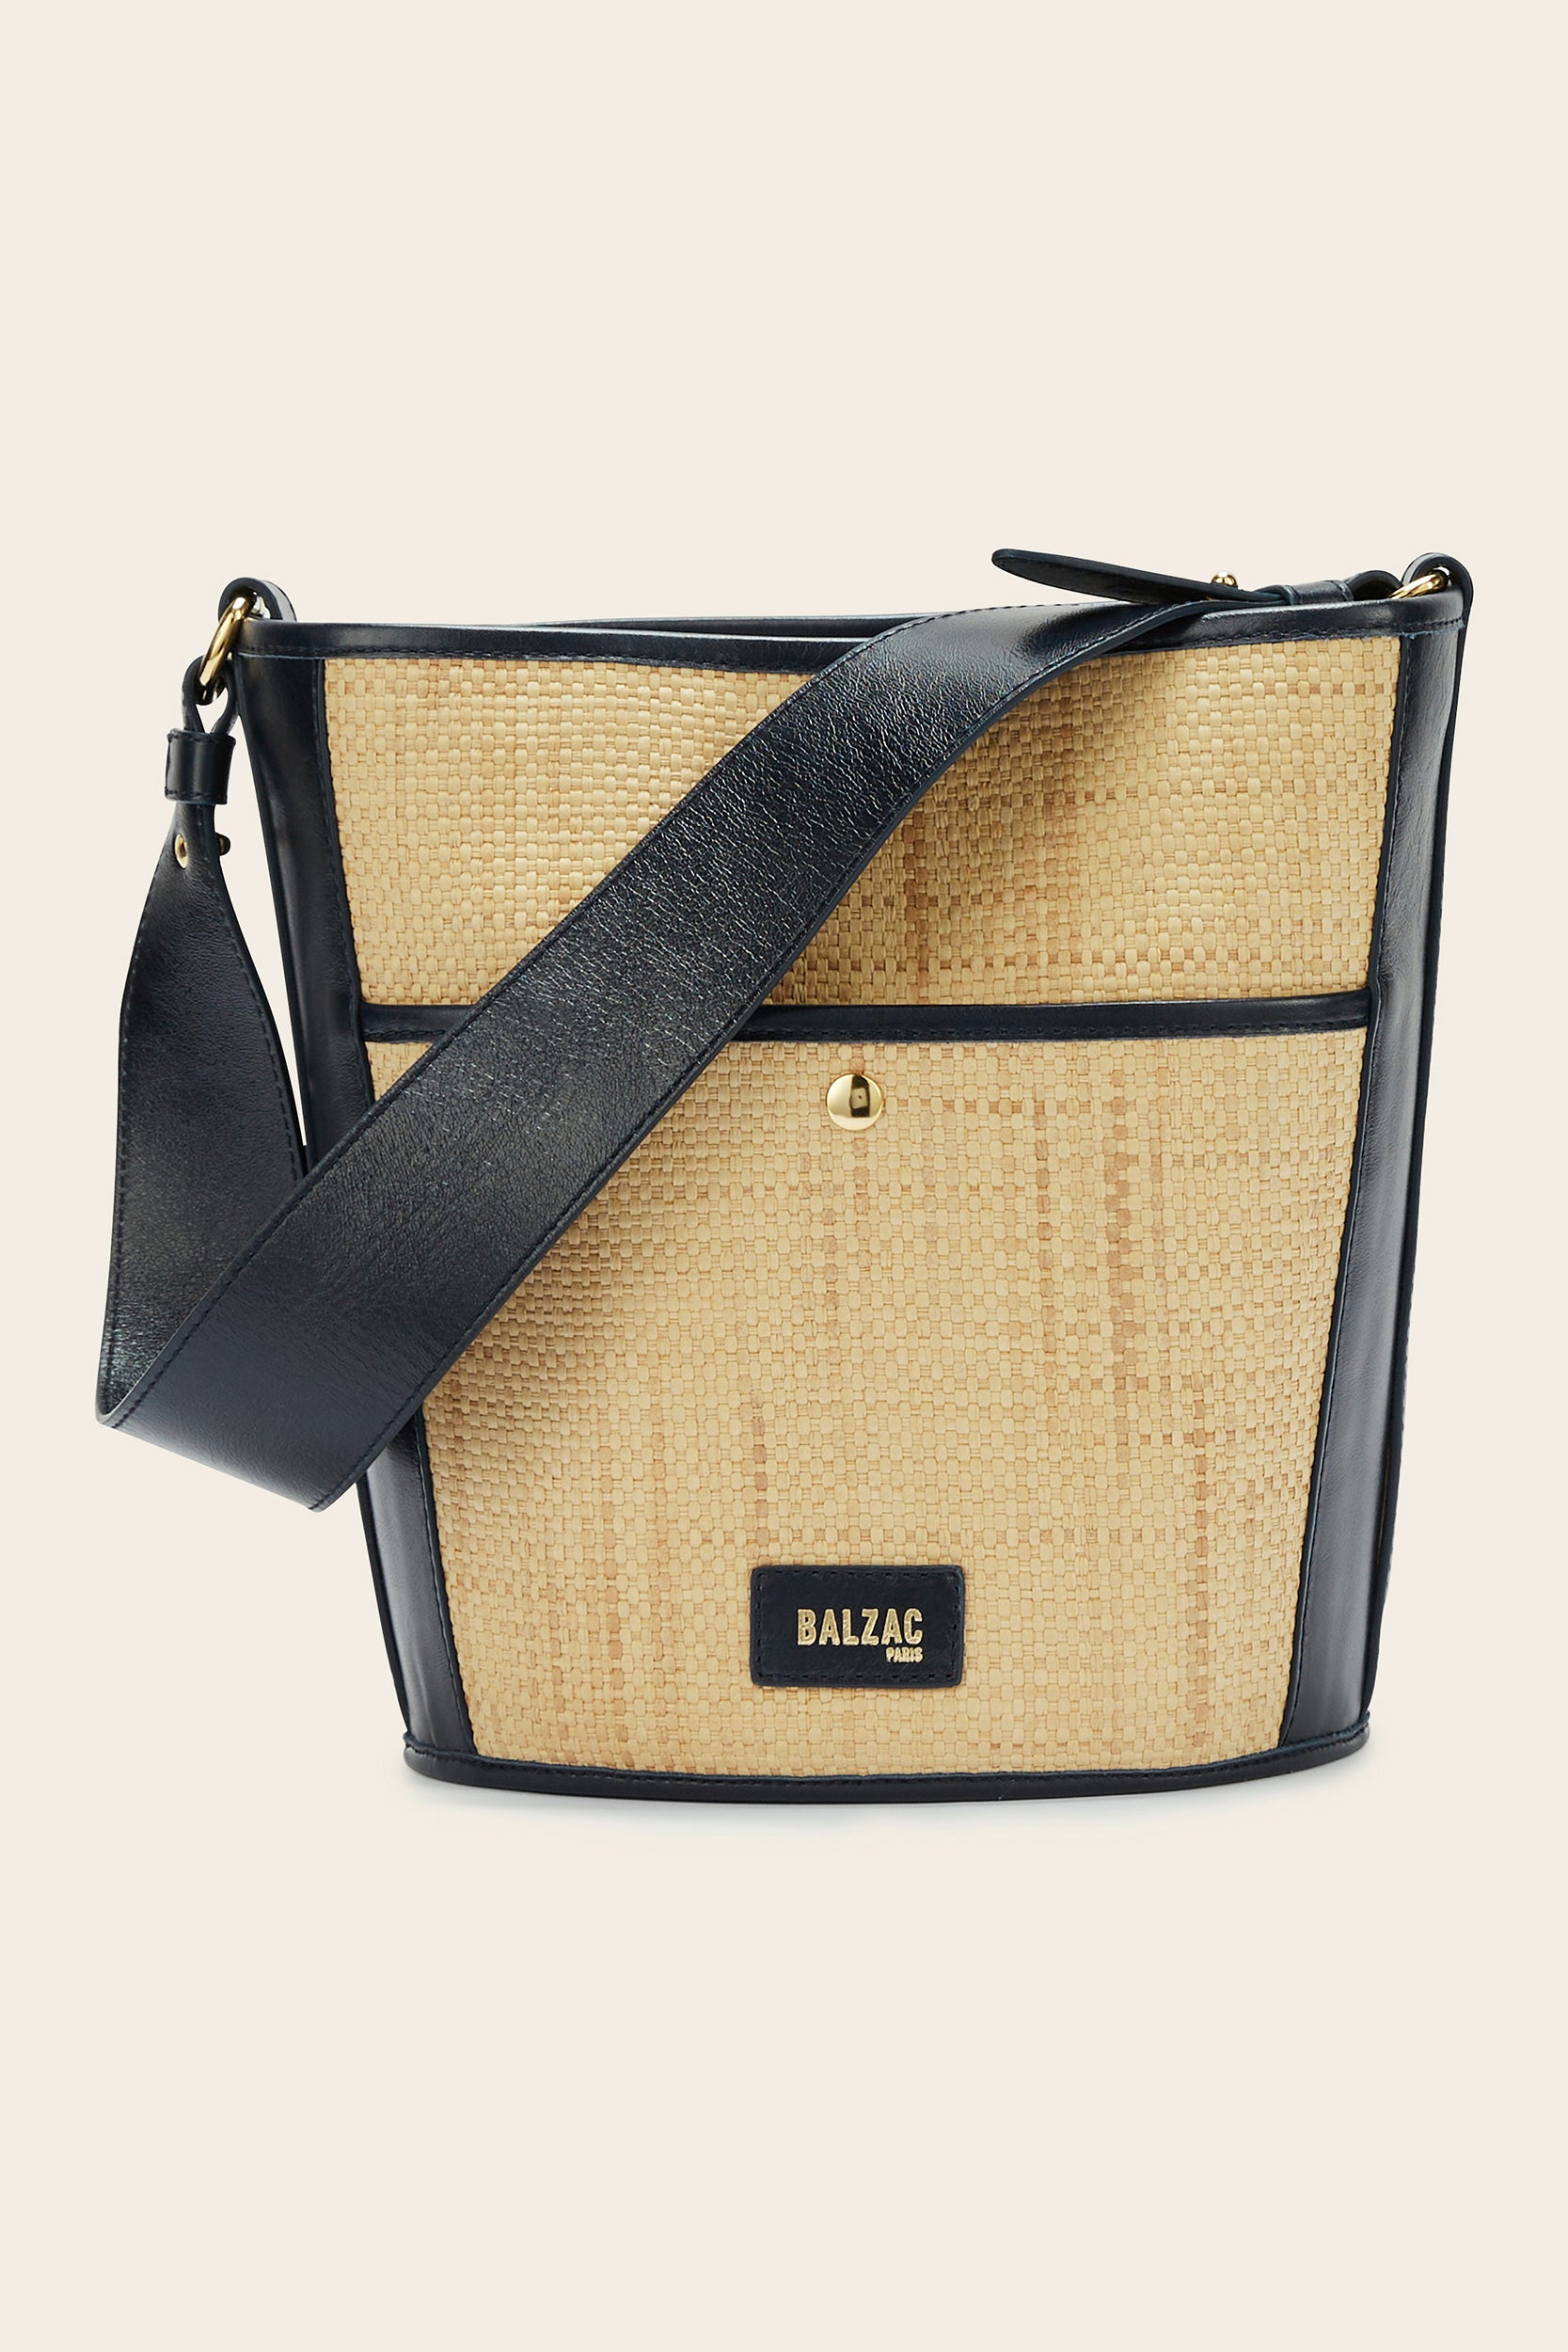 Sofia bi-material raffia and navy bag